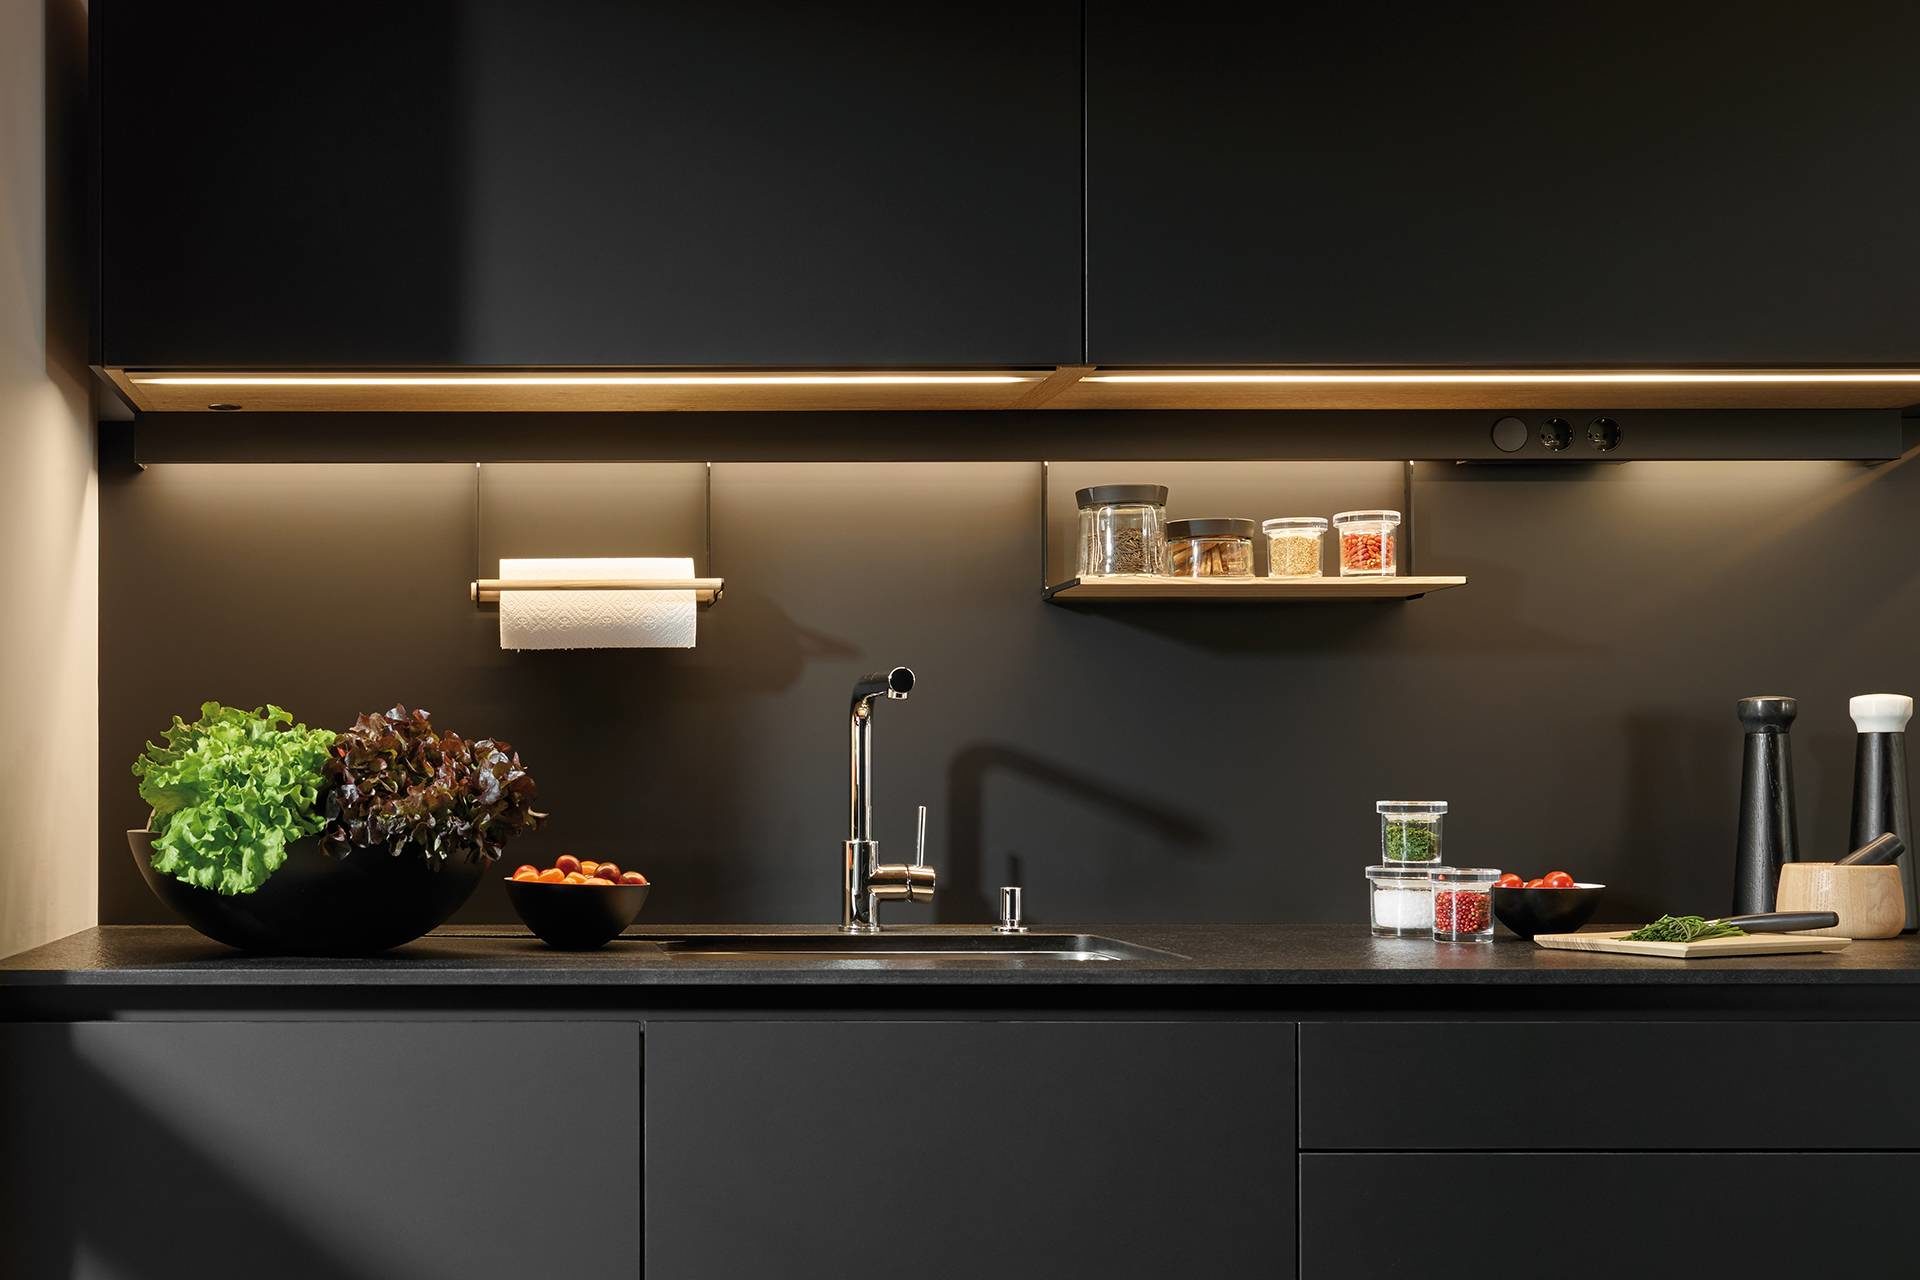 Illuminated black kitchen worktop